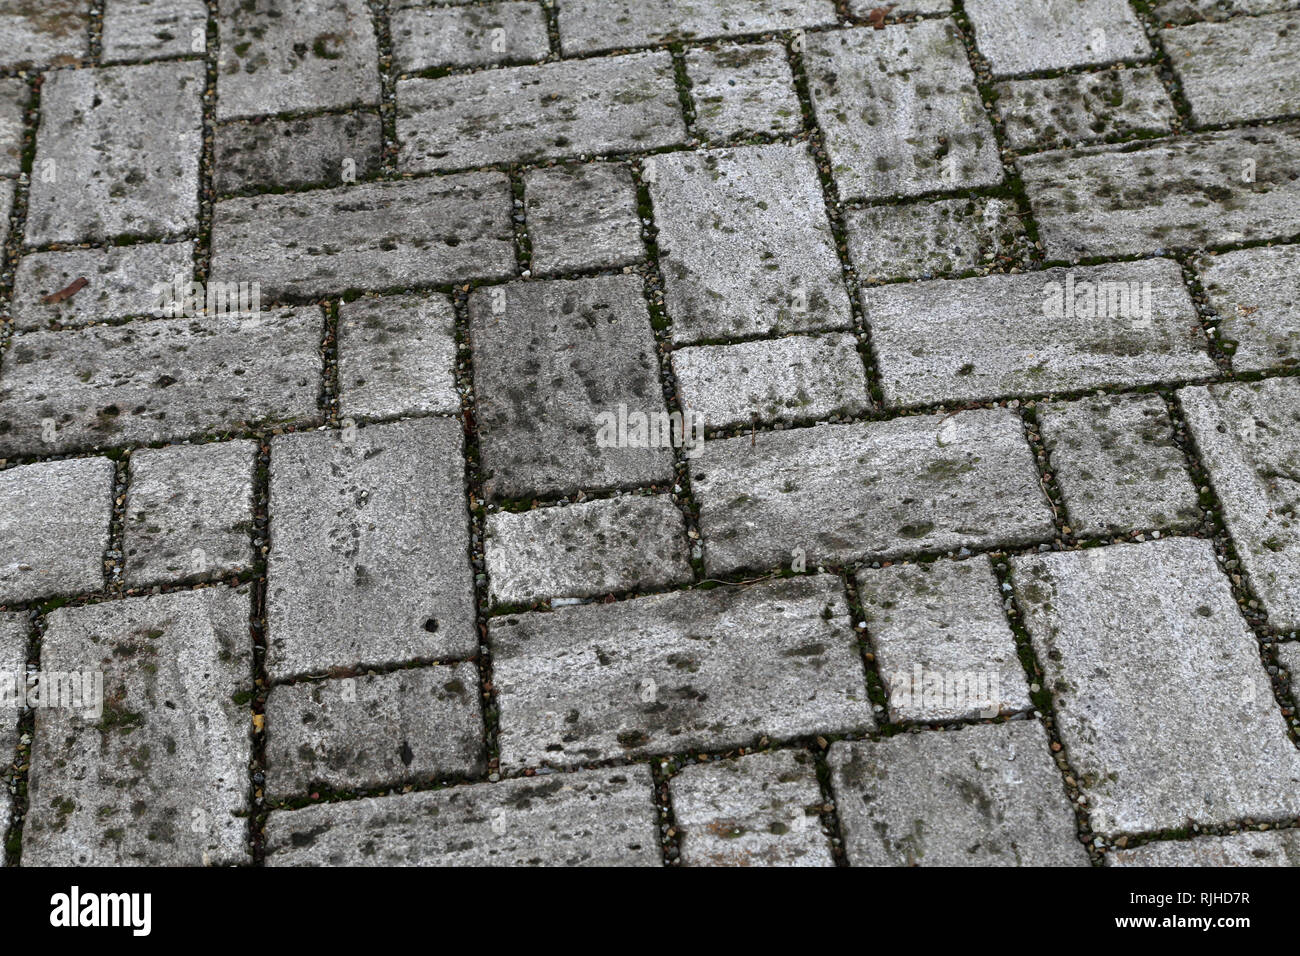 Bürgersteig, Auffahrt, Pflastersteine, Pflaster. Perspektivische Ansicht  von monotonen grauen Stein Stein auf den Boden für die Straße Straße  Stockfotografie - Alamy